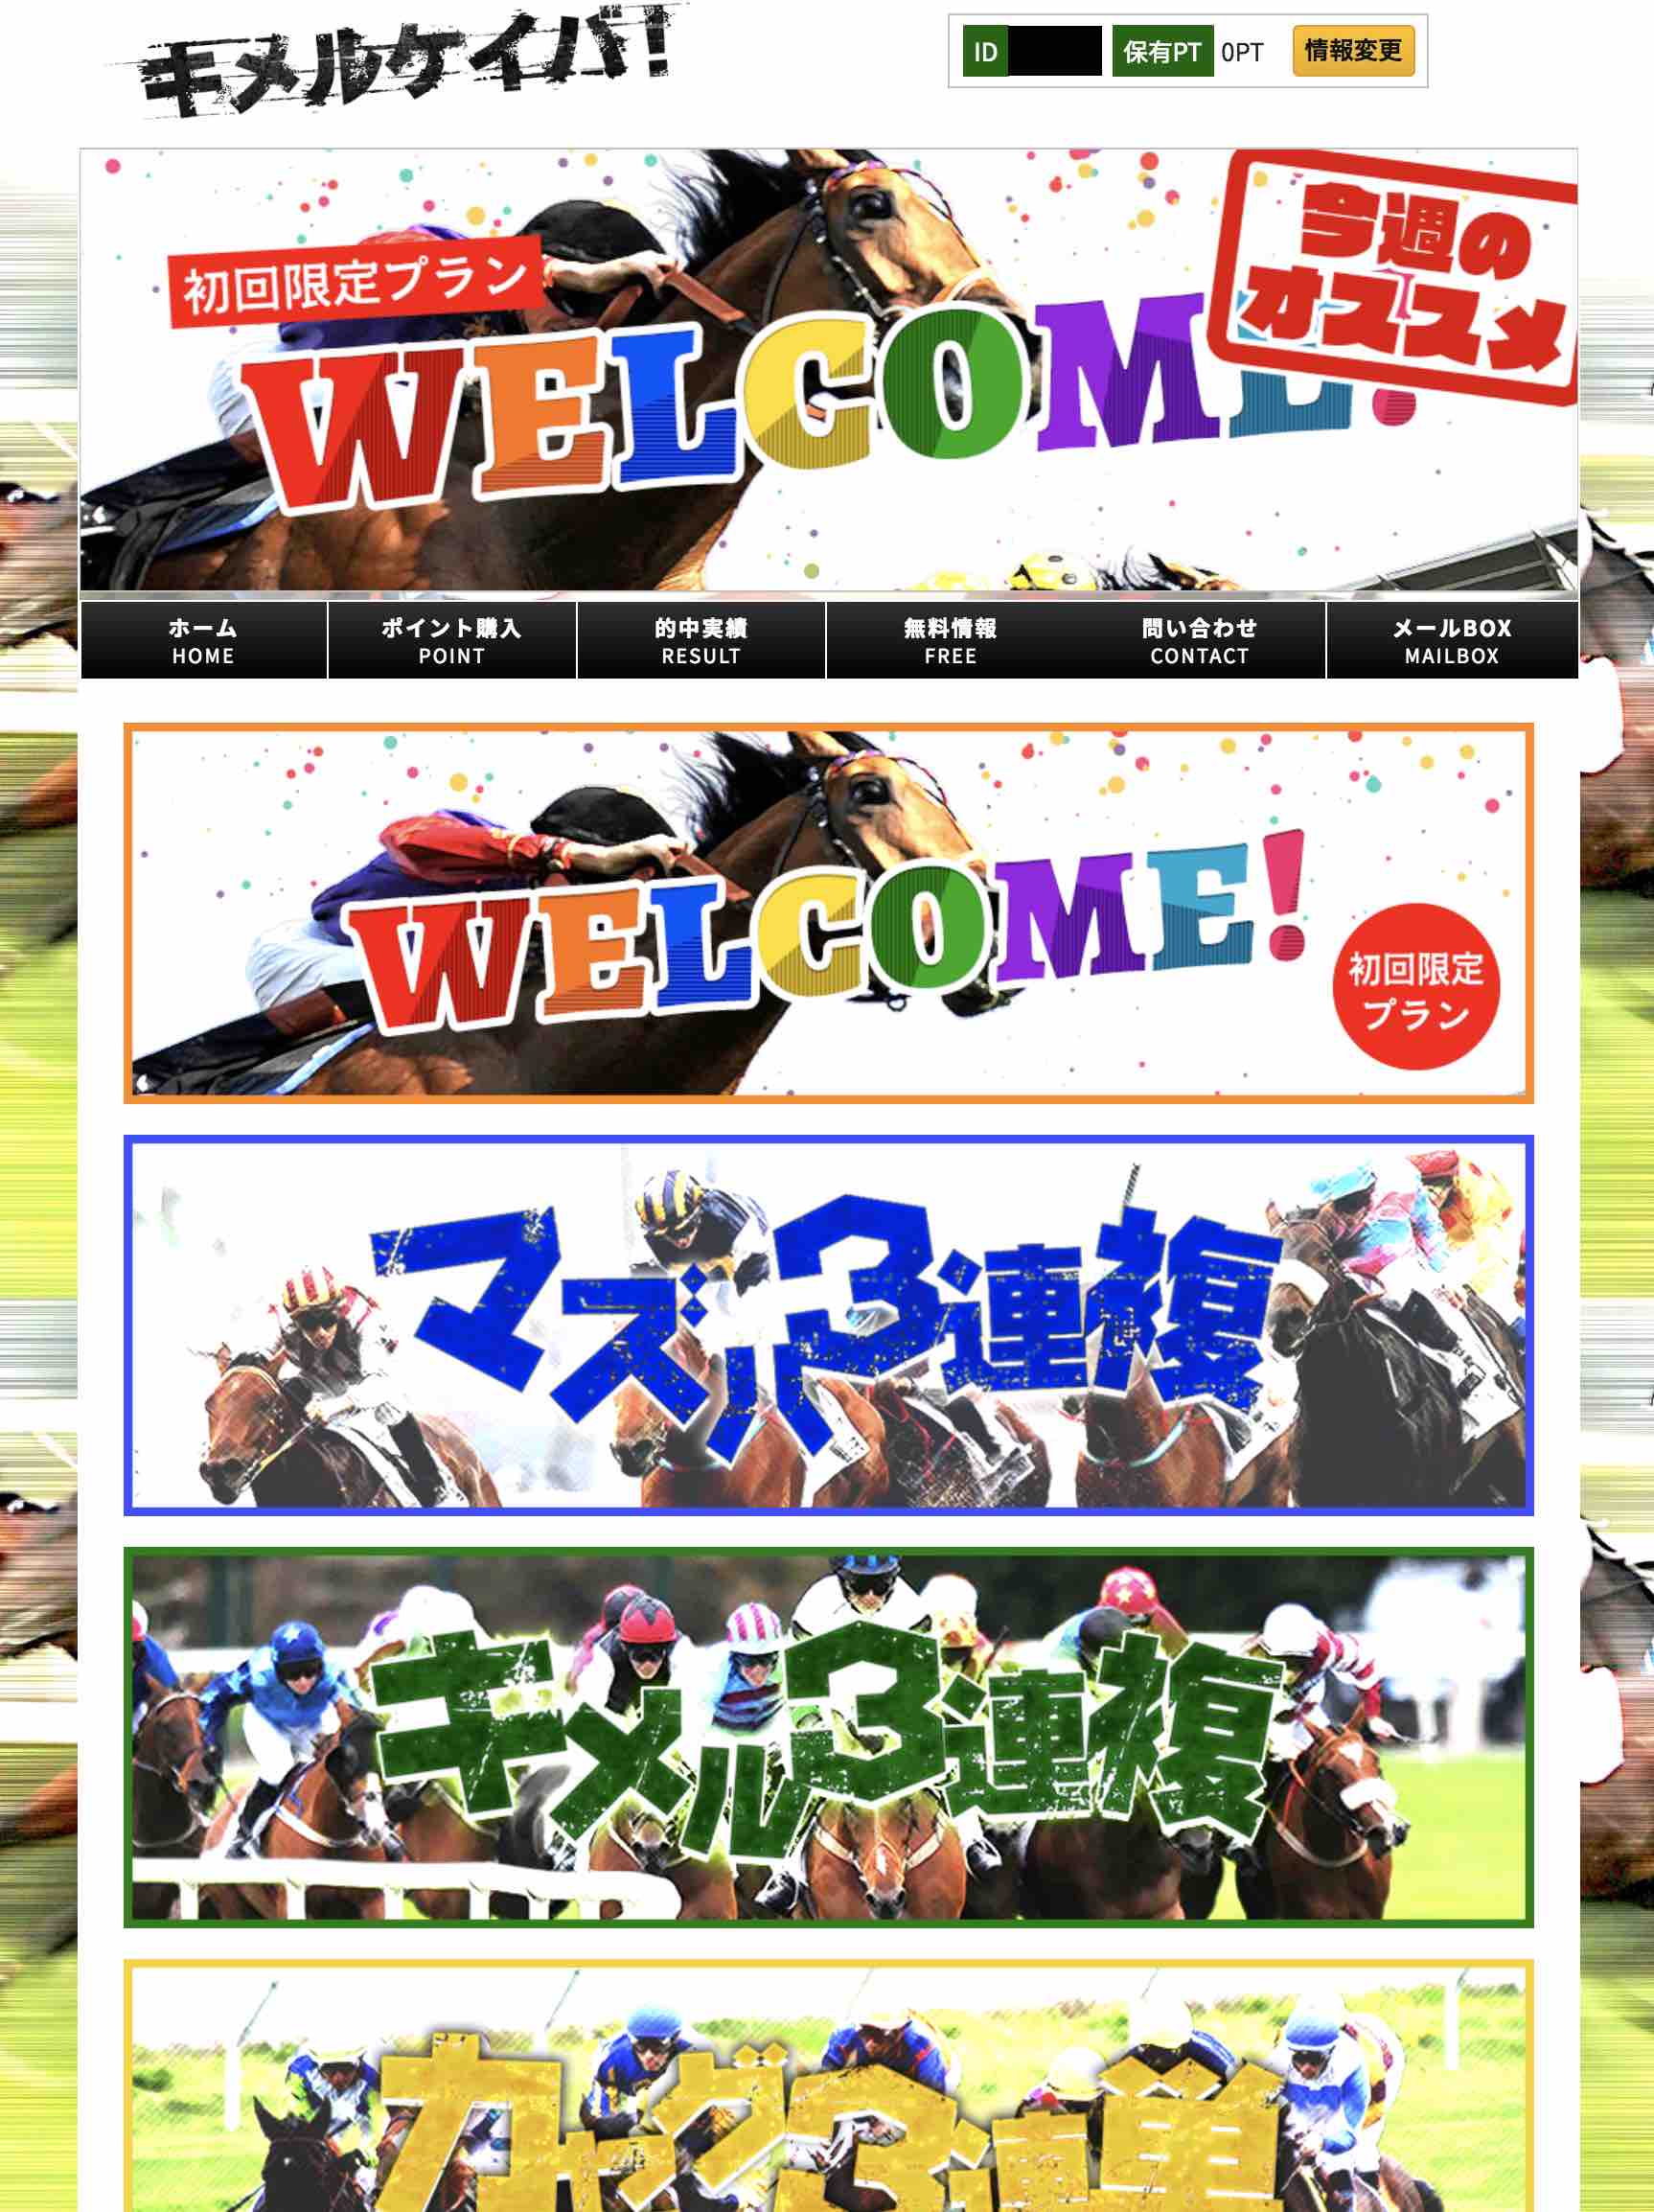 キメルケイバという競馬予想サイトの会員ページ